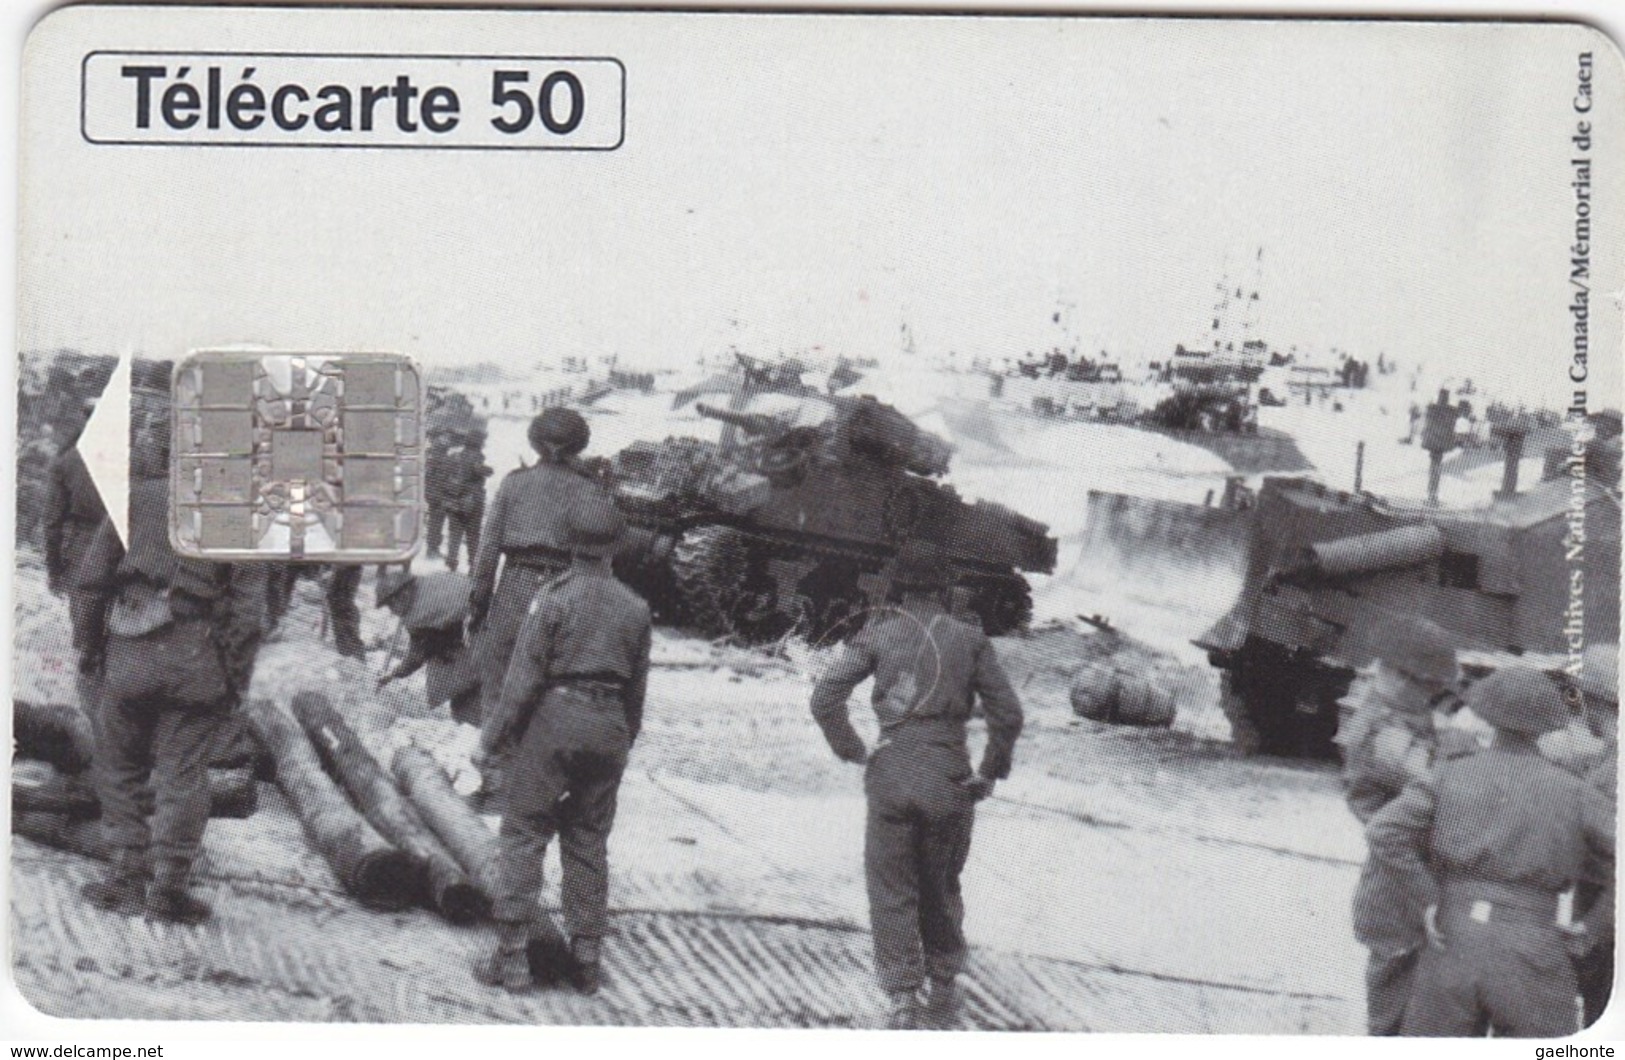 TC118 TÉLÉCARTE 50 UNITÉS - 1944-1994 - 50ème ANNIVERSAIRE DES DEBARQUEMENTS... - COURSEULLE SUR MER 06 JUIN 1944 - Armee